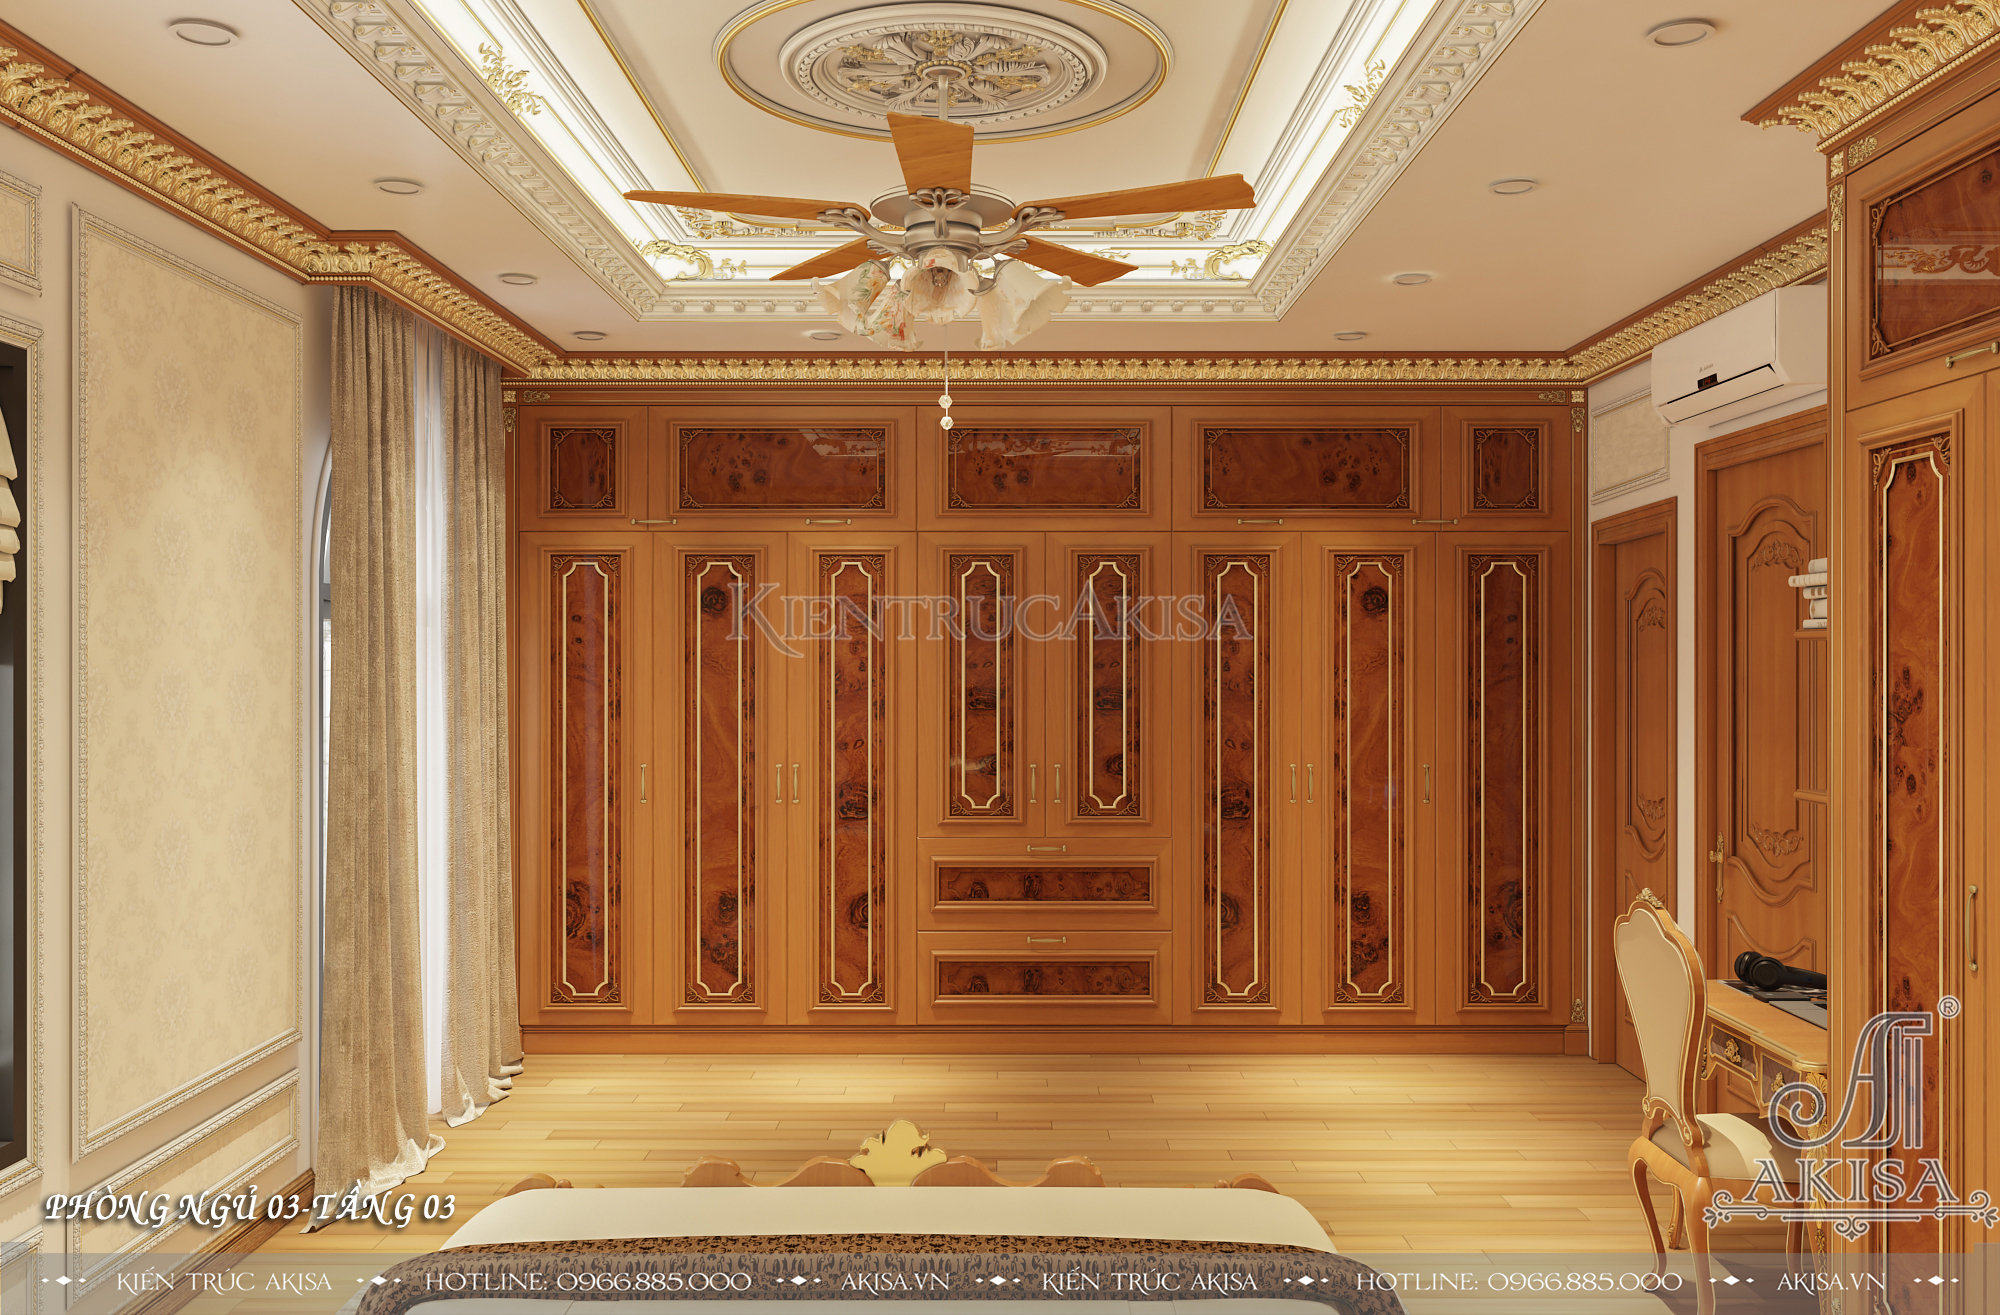 Mẫu nội thất gỗ tự nhiên phong cách tân cổ điển